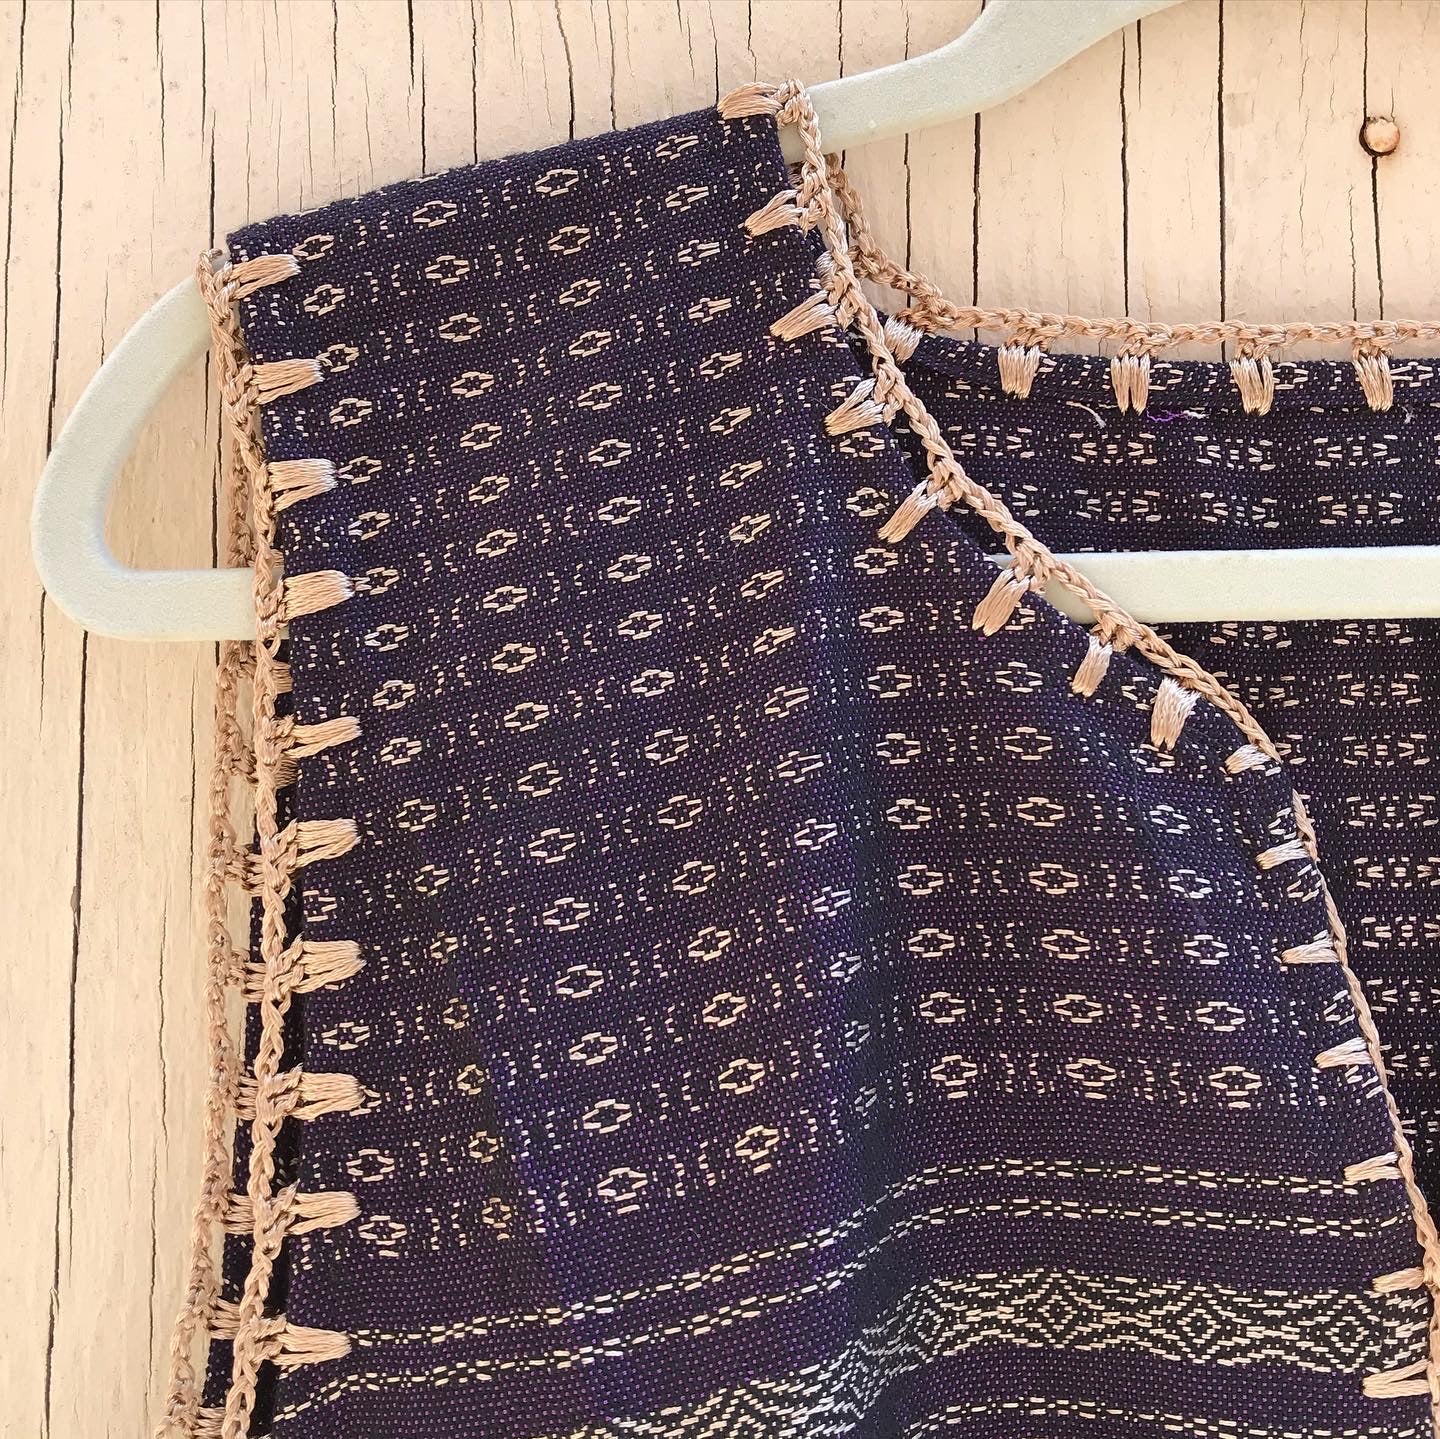 Women’s Tapestry Vest in Purple